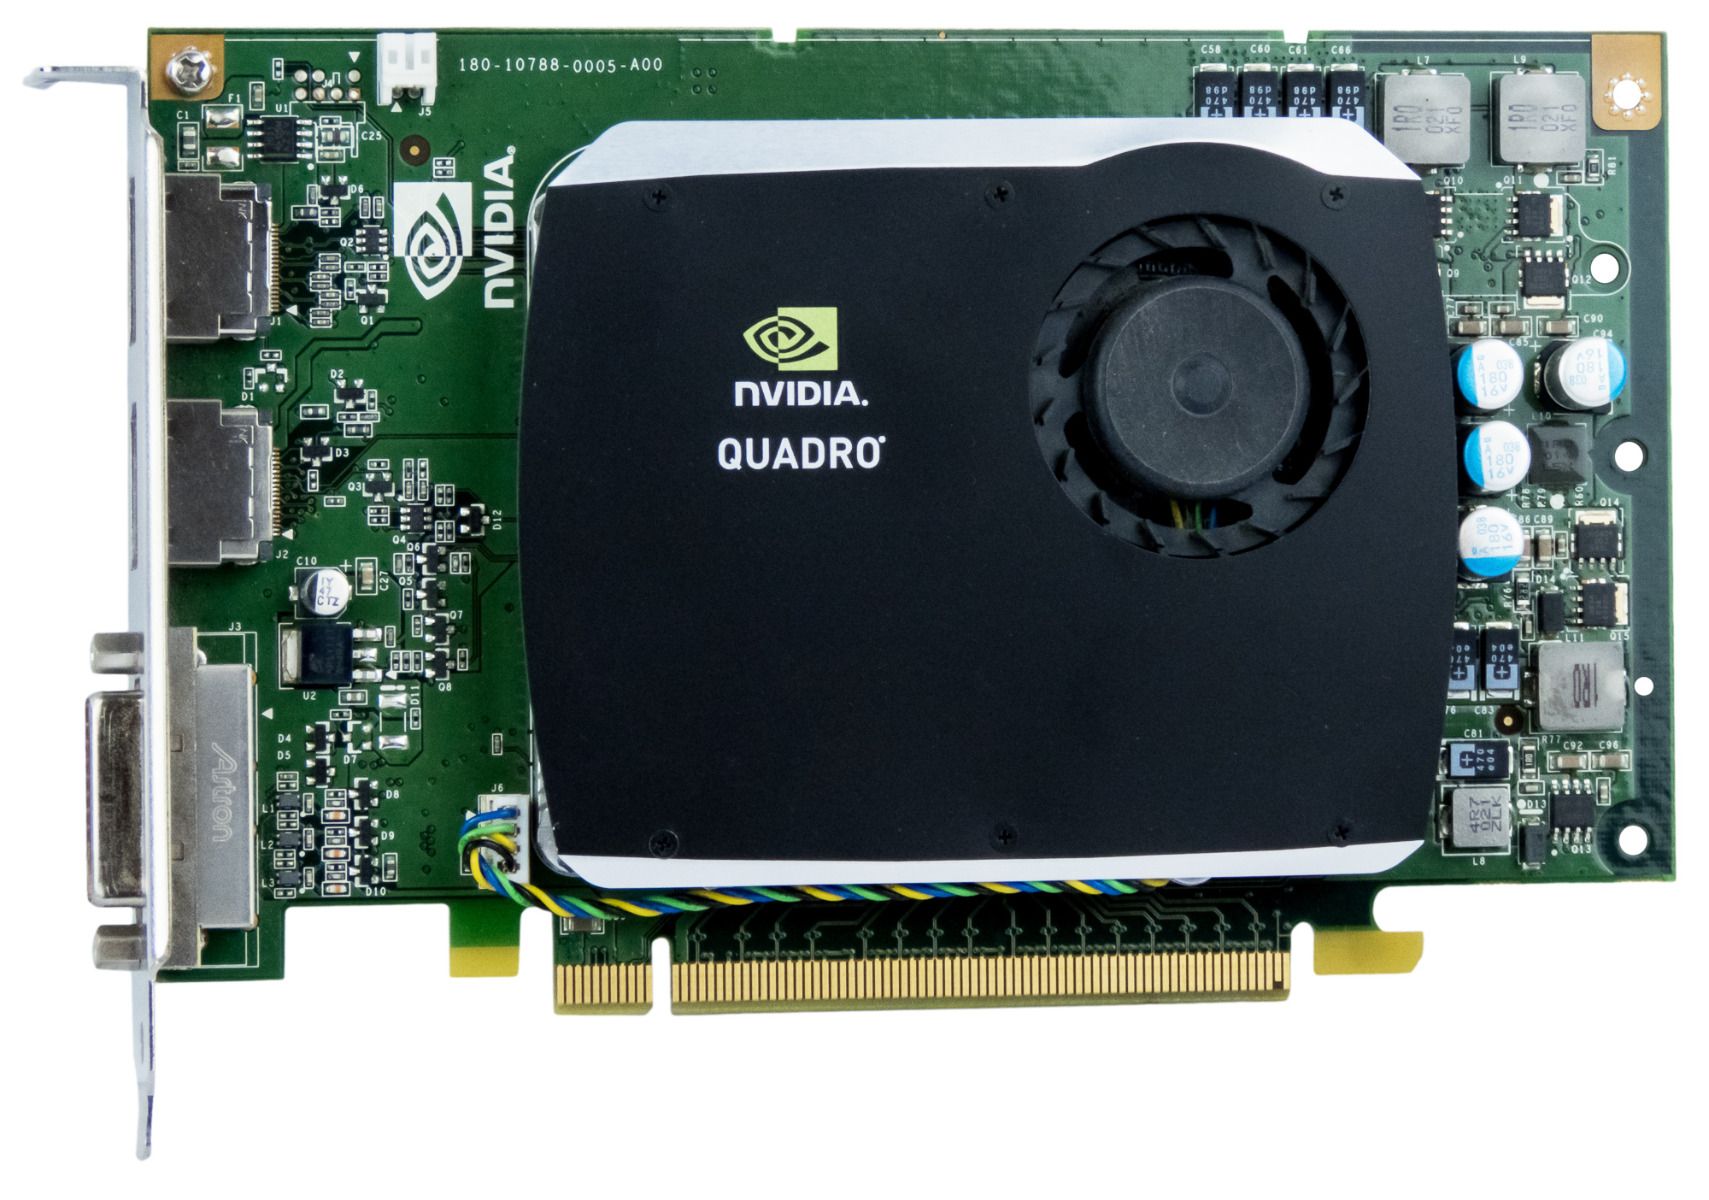 NVIDIA QUADRO FX 580 512 MB GDDR3 PCI-E 